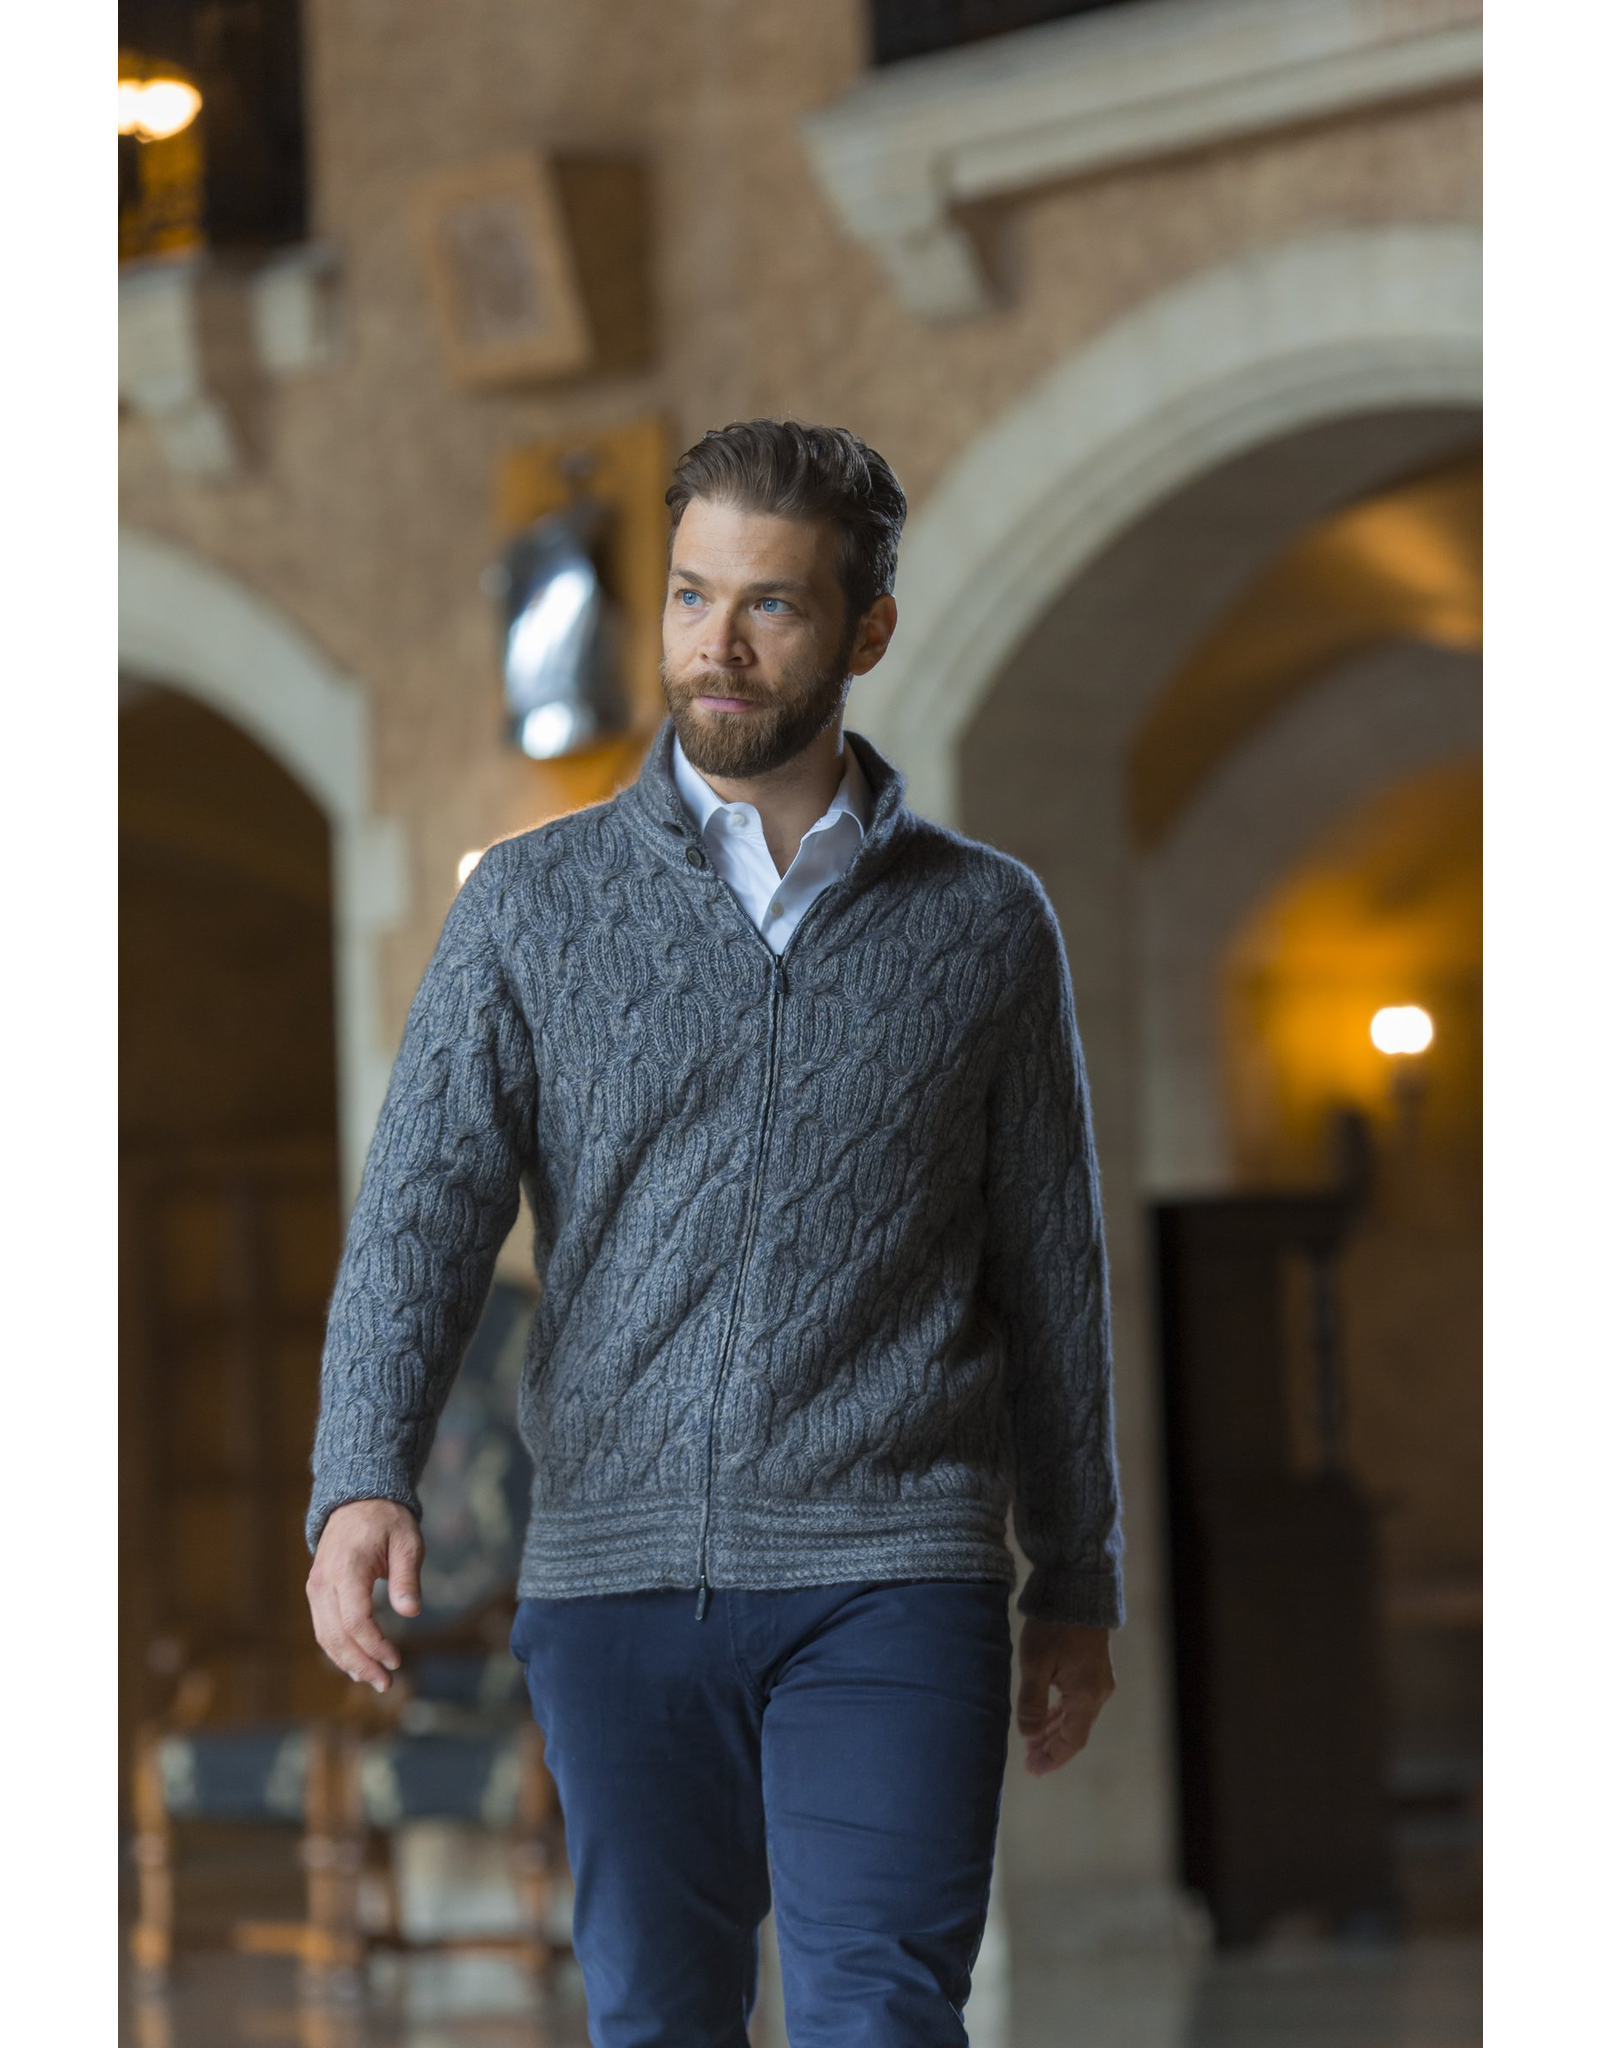 Robert Zip Sweater - 45% Qiviuk 45% Merino 10% Silk